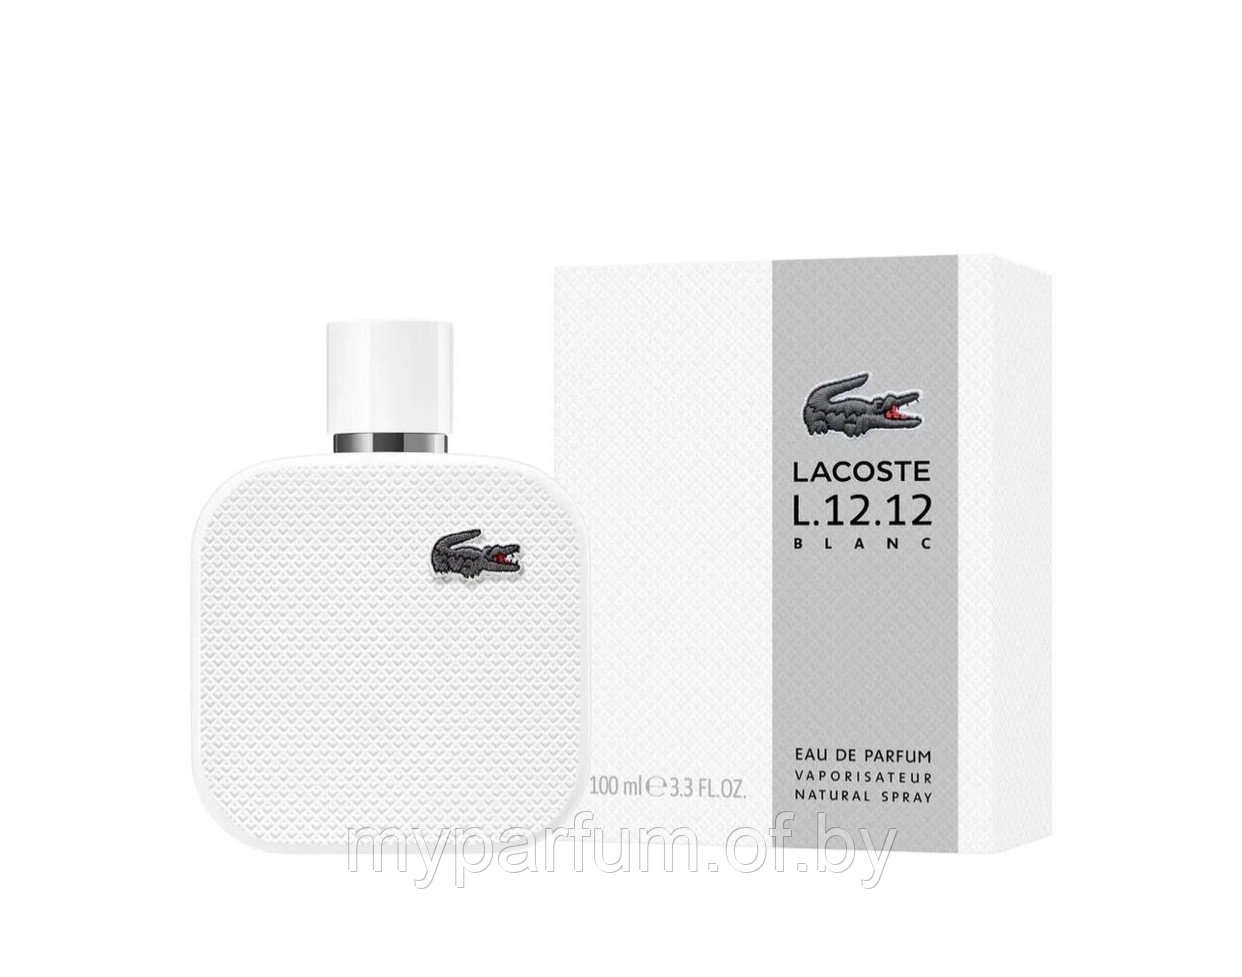 Мужская туалетная вода  Lacoste L.12.12 Blanc Pour Homme edp 100ml